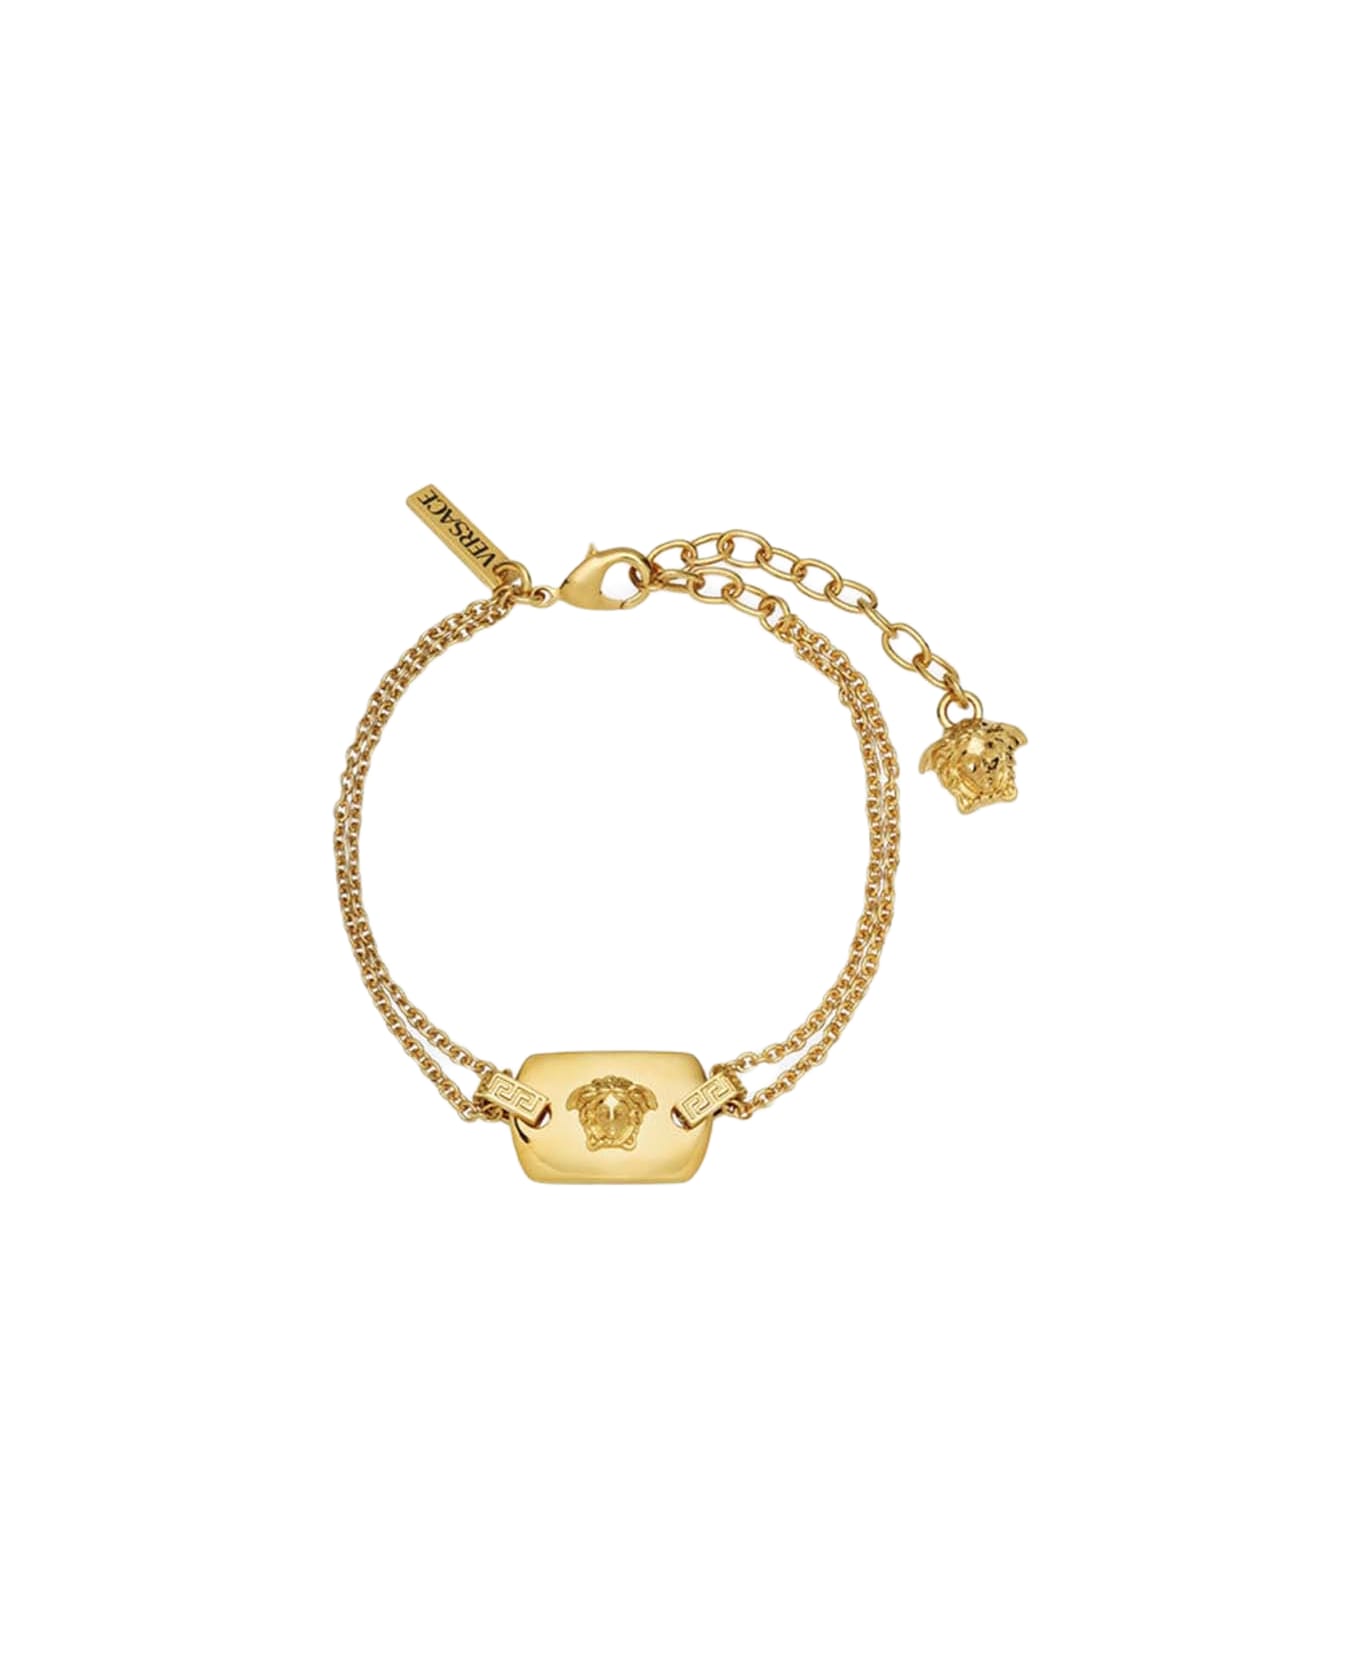 Versace Medusa Bracelet - Golden